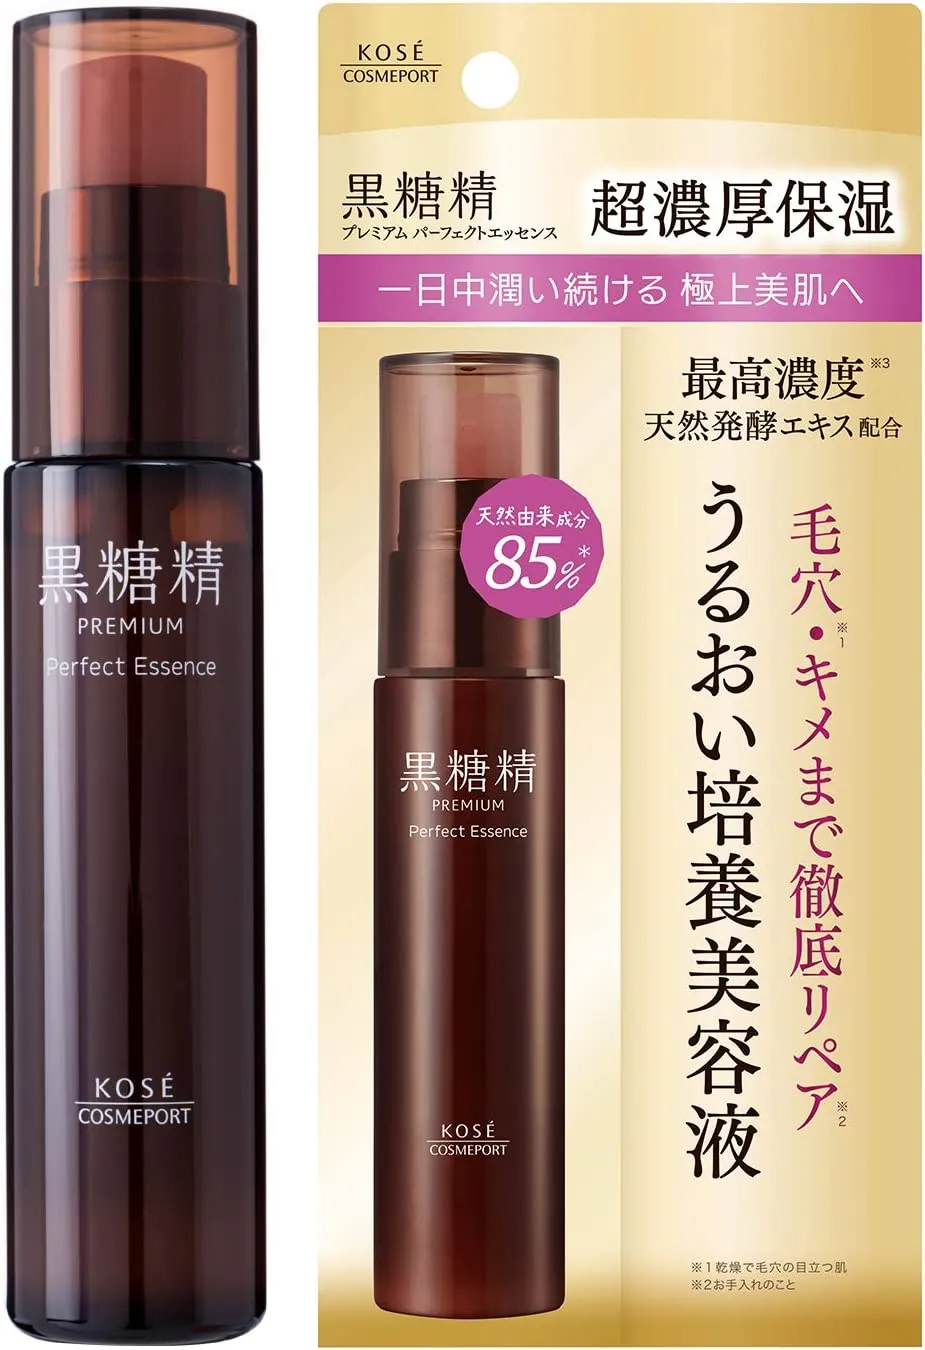 Интенсивно увлажняющая эссенция для лица с экстрактом ферментированного коричневого сахара Kose Cosmeport Kokutousei Premium Perfect Essence